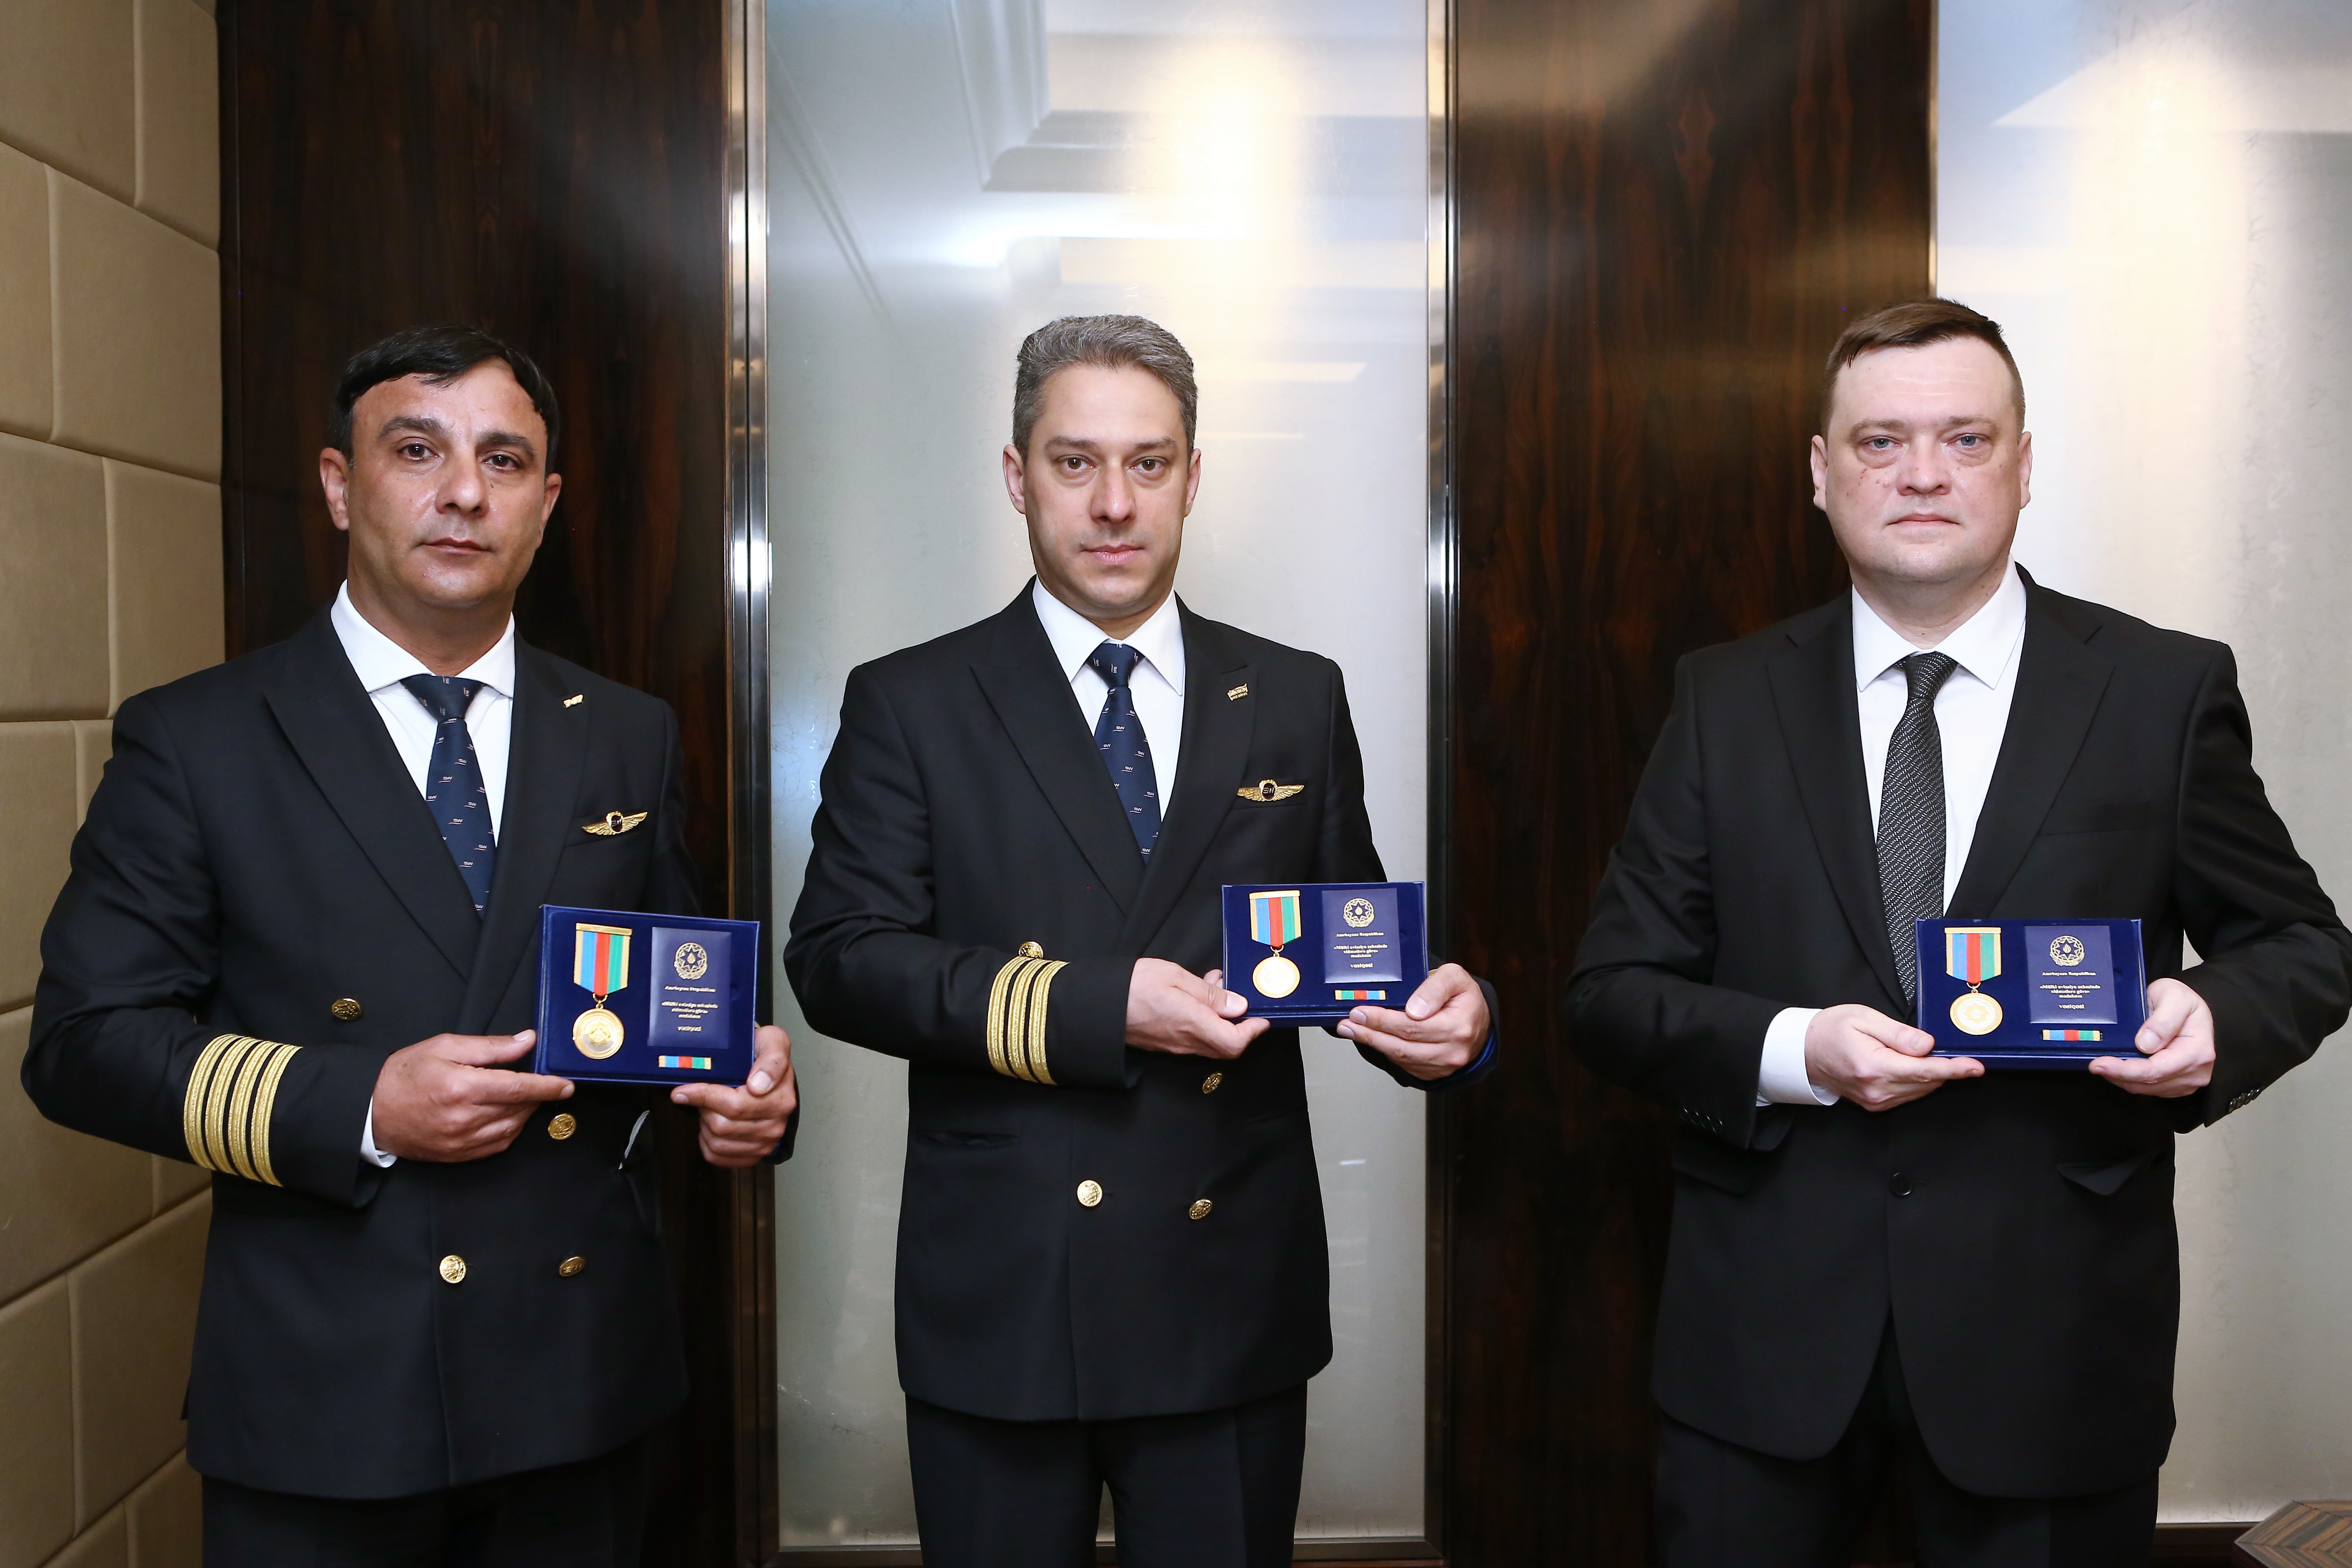 Сотрудники Silk Way West Airlines награждены по случаю профессионального праздника